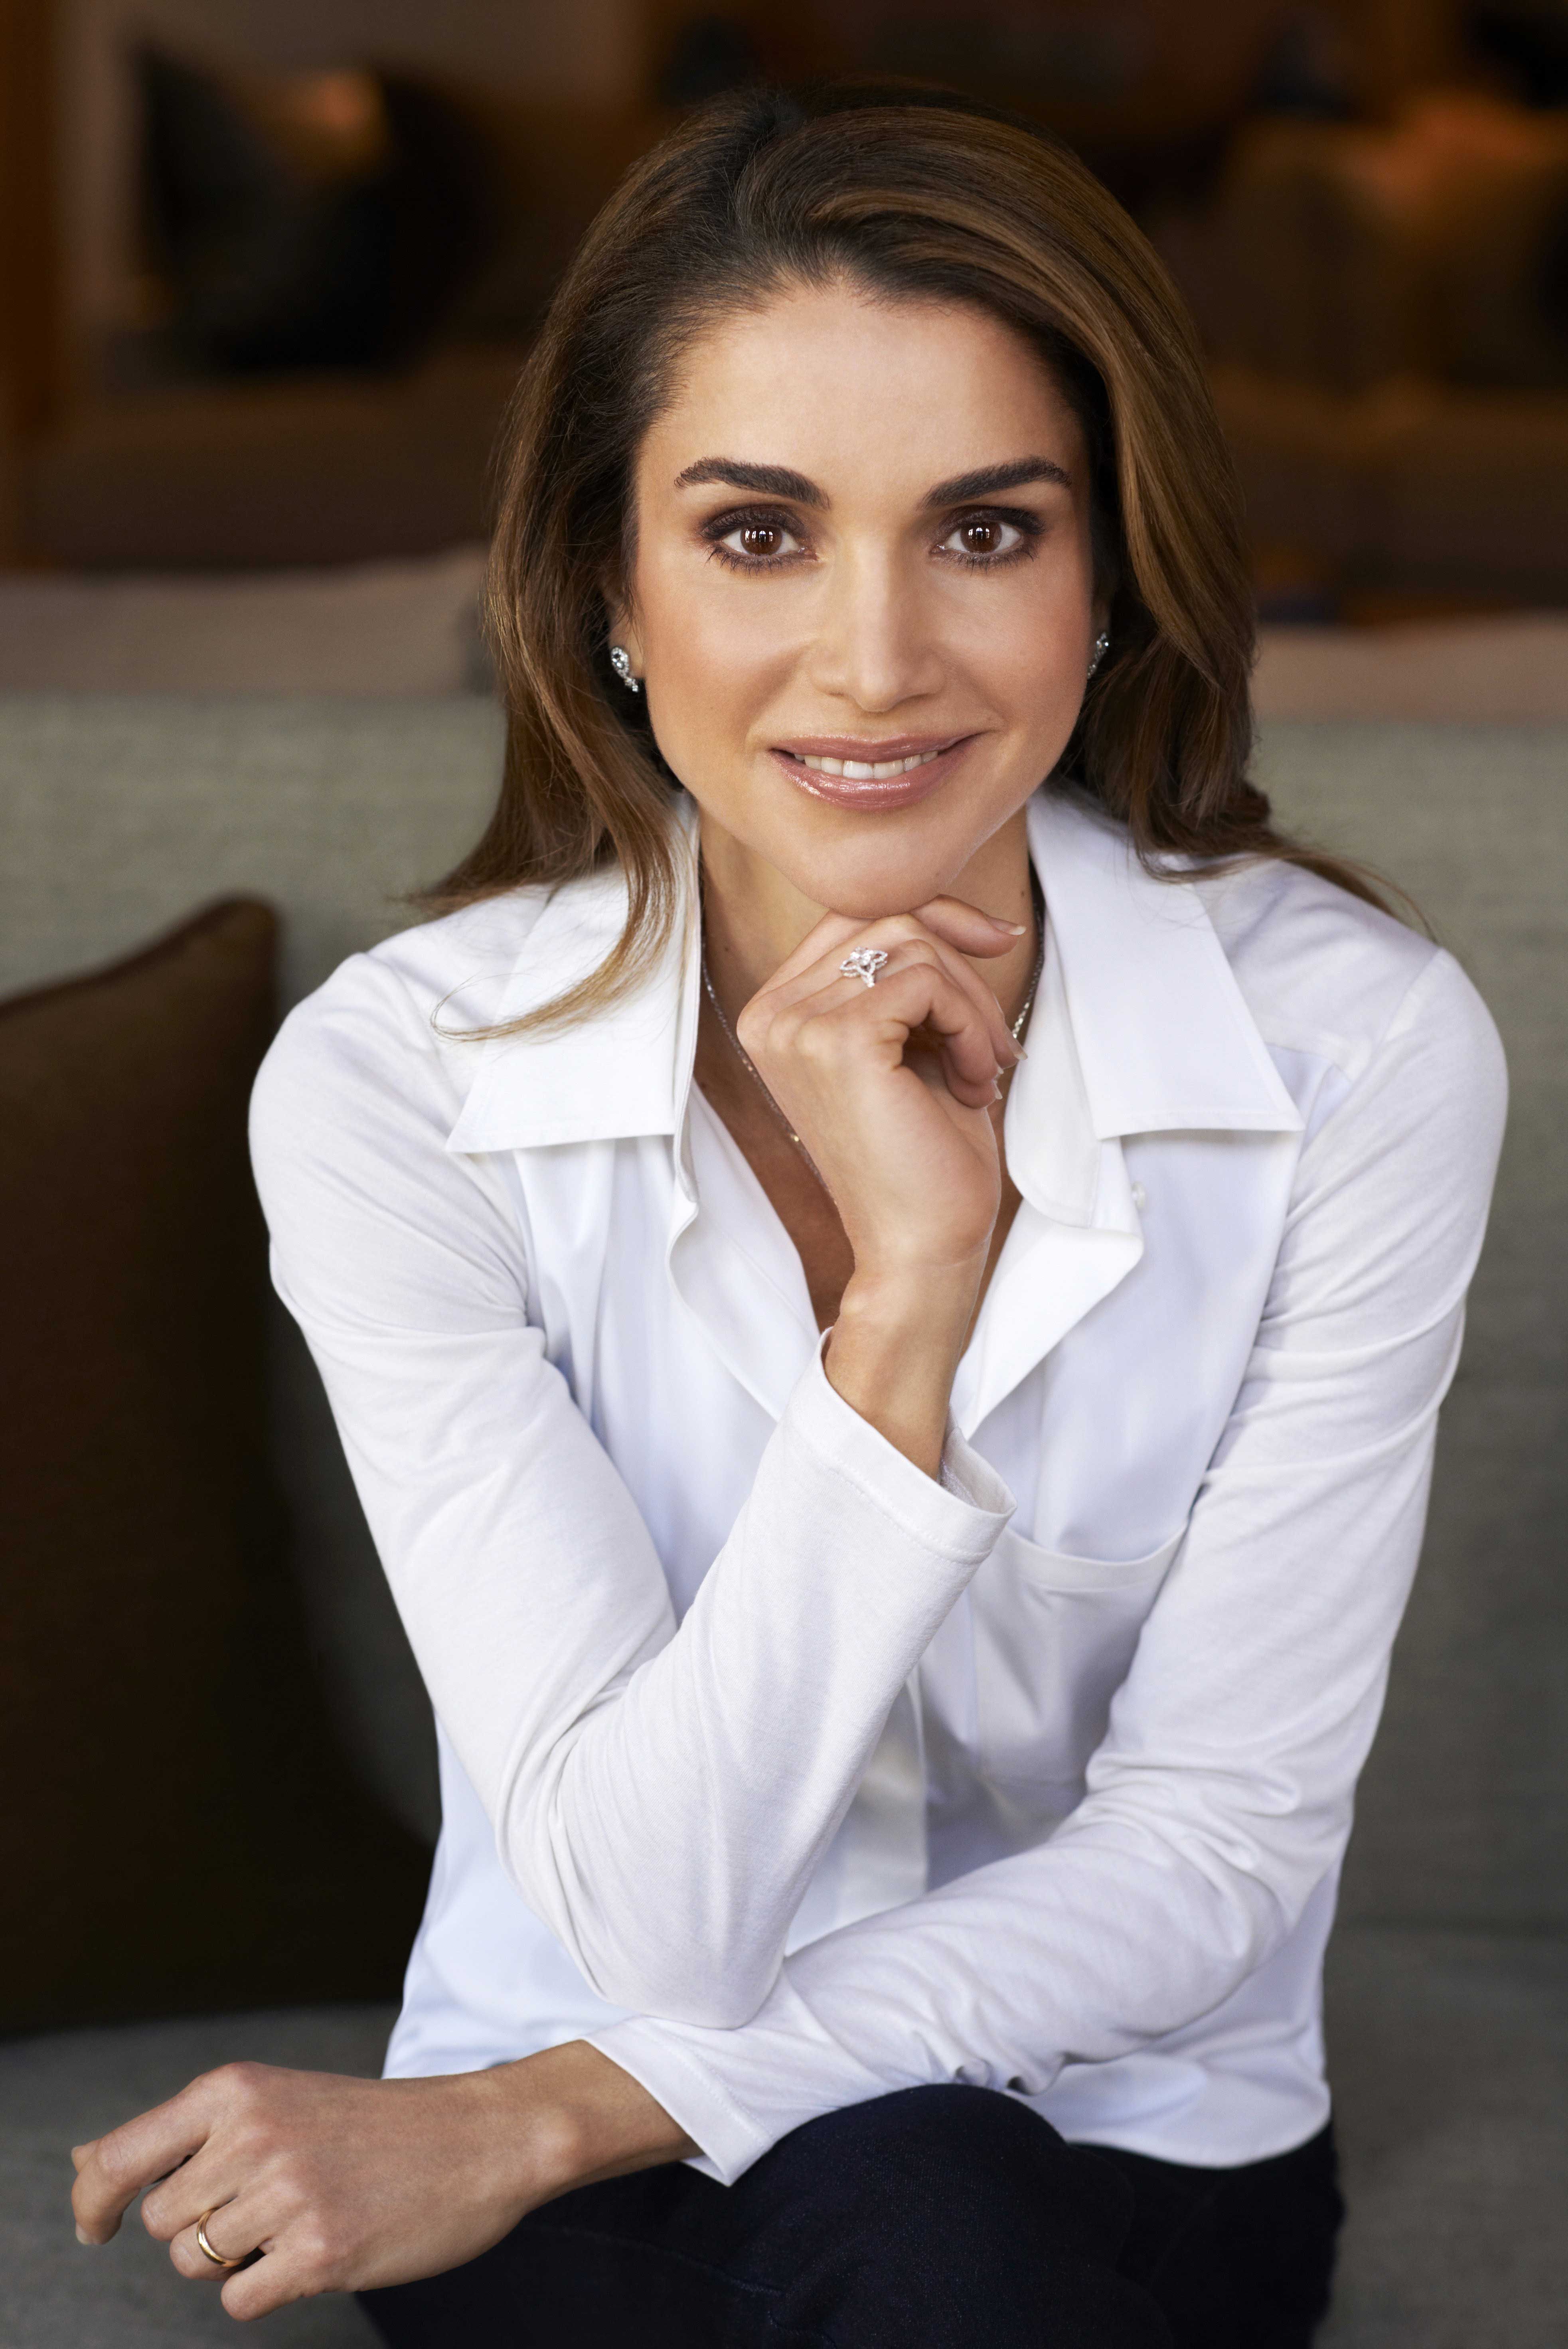 klynke Tidlig vindruer Queen Rania of Jordan talks battling ISIS on Twitter | Women and social  media